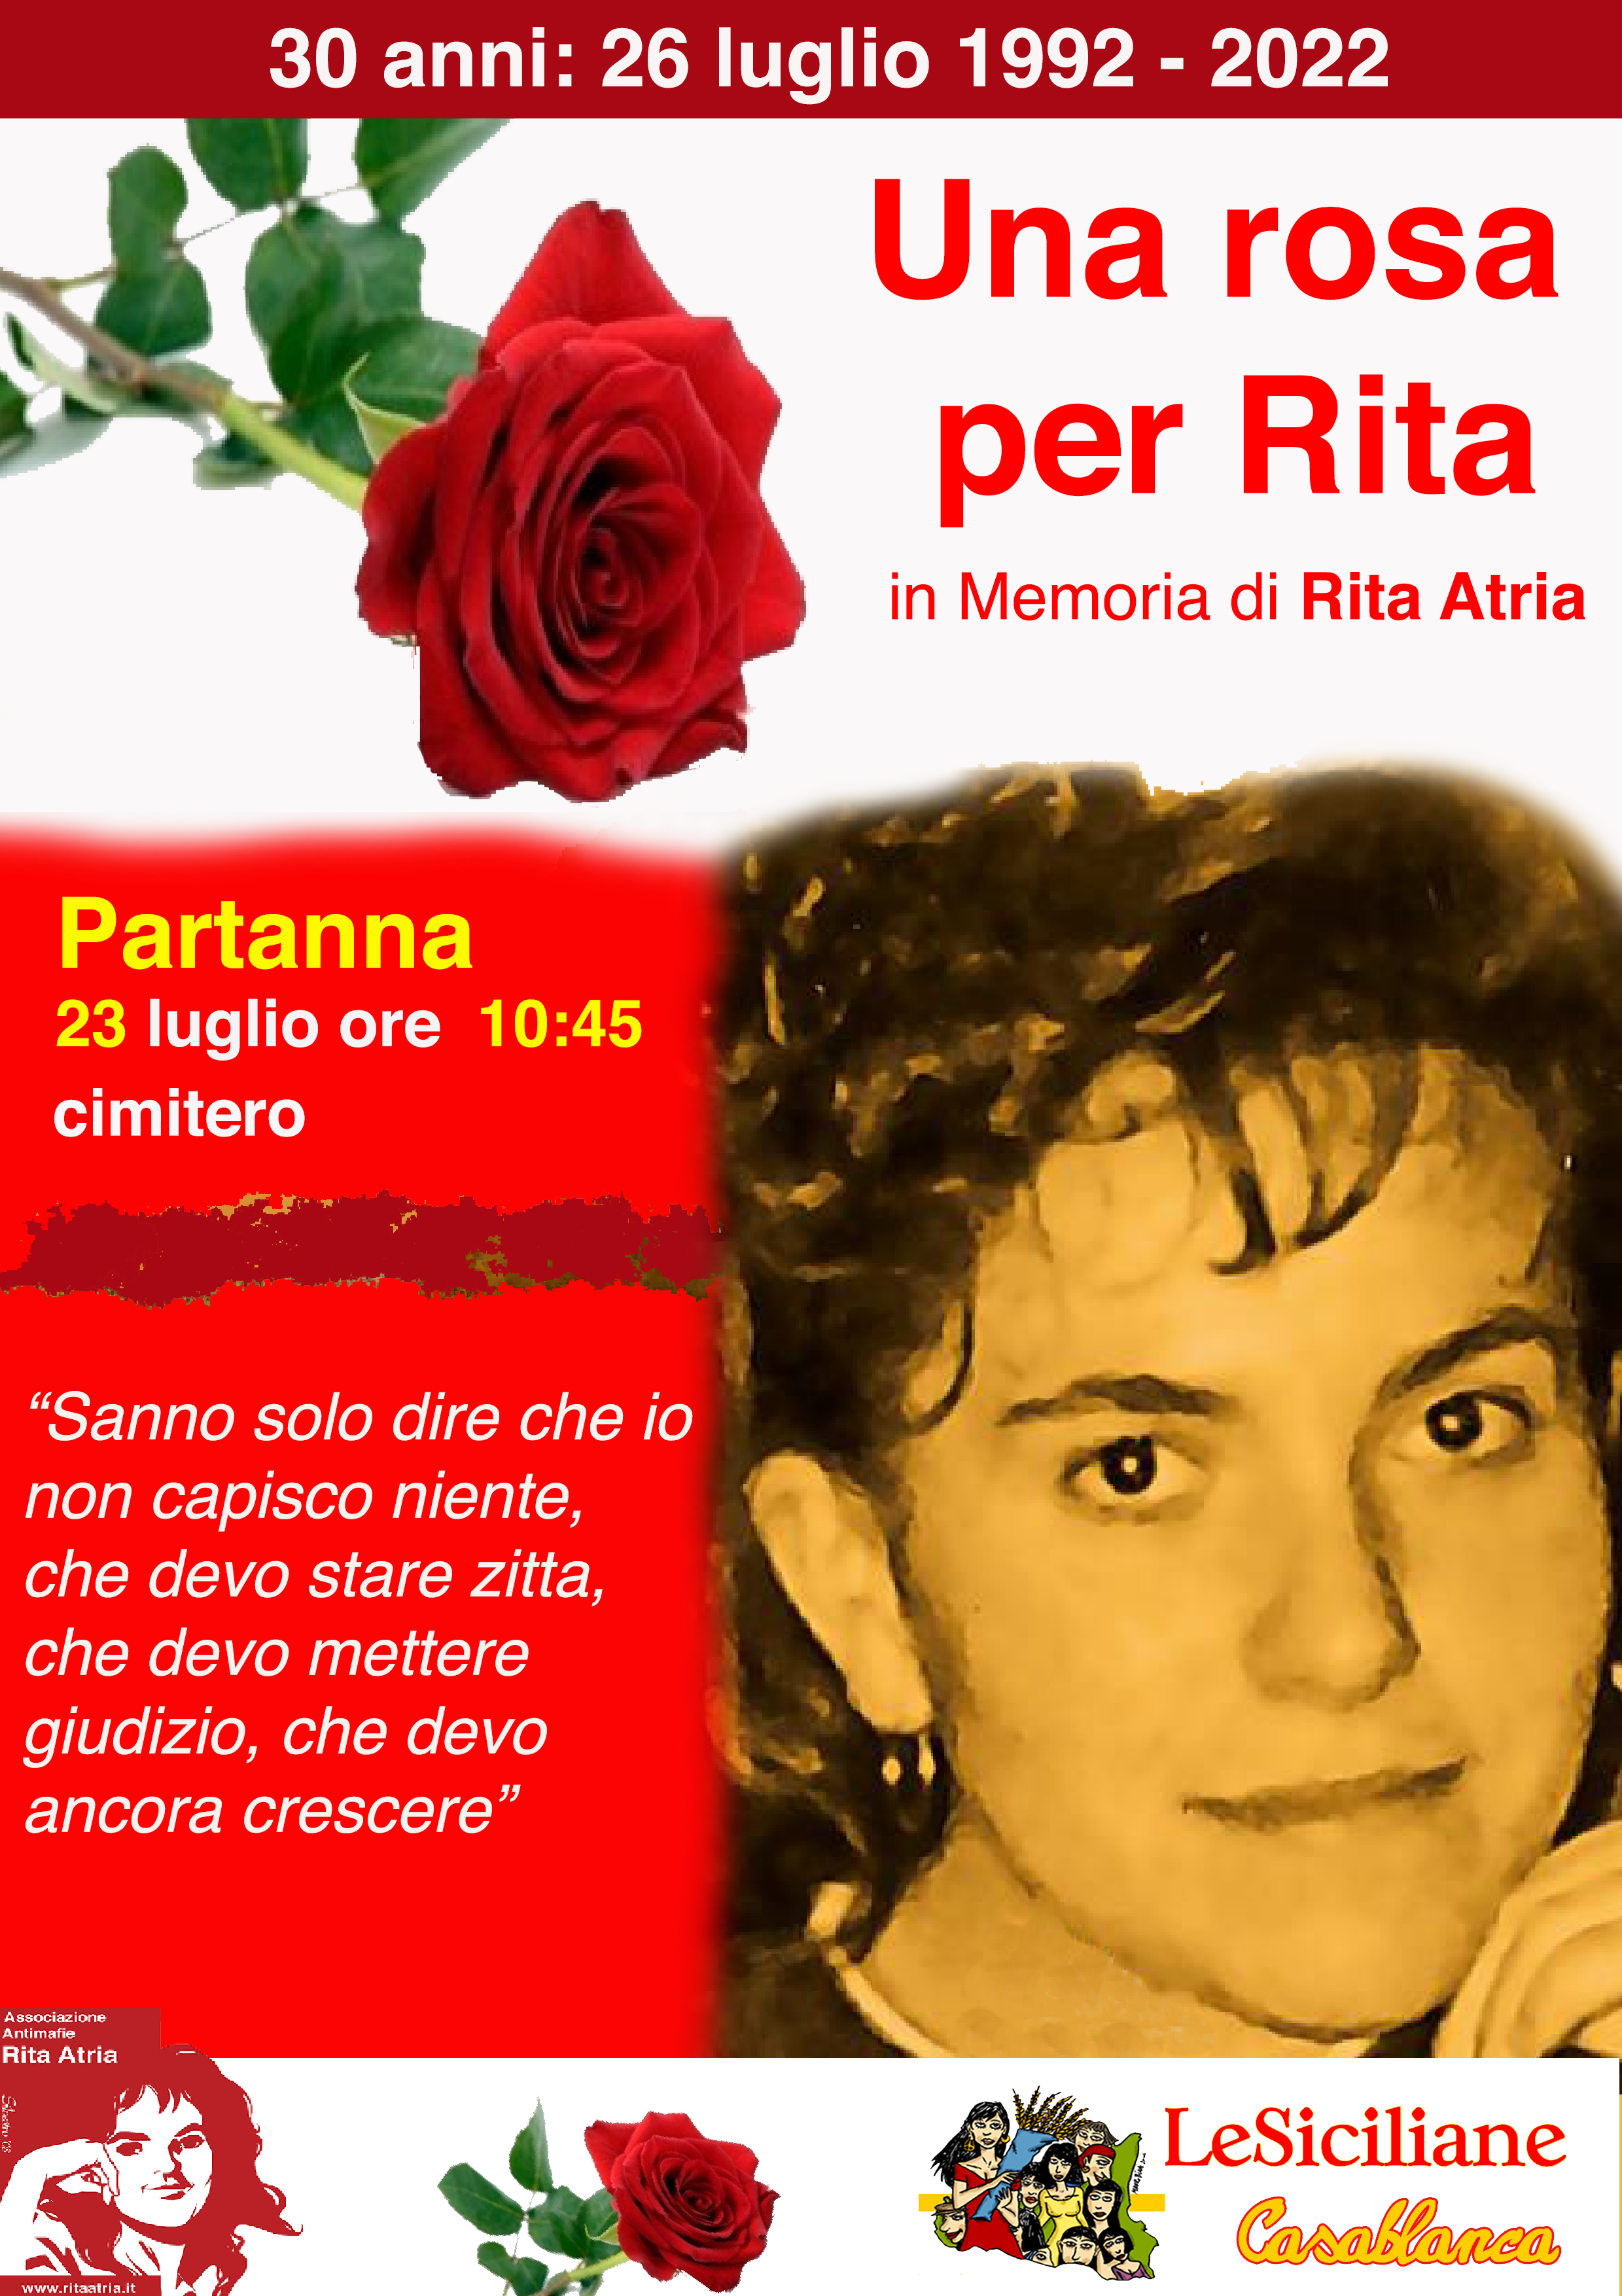 Partanna, una rosa per Rita